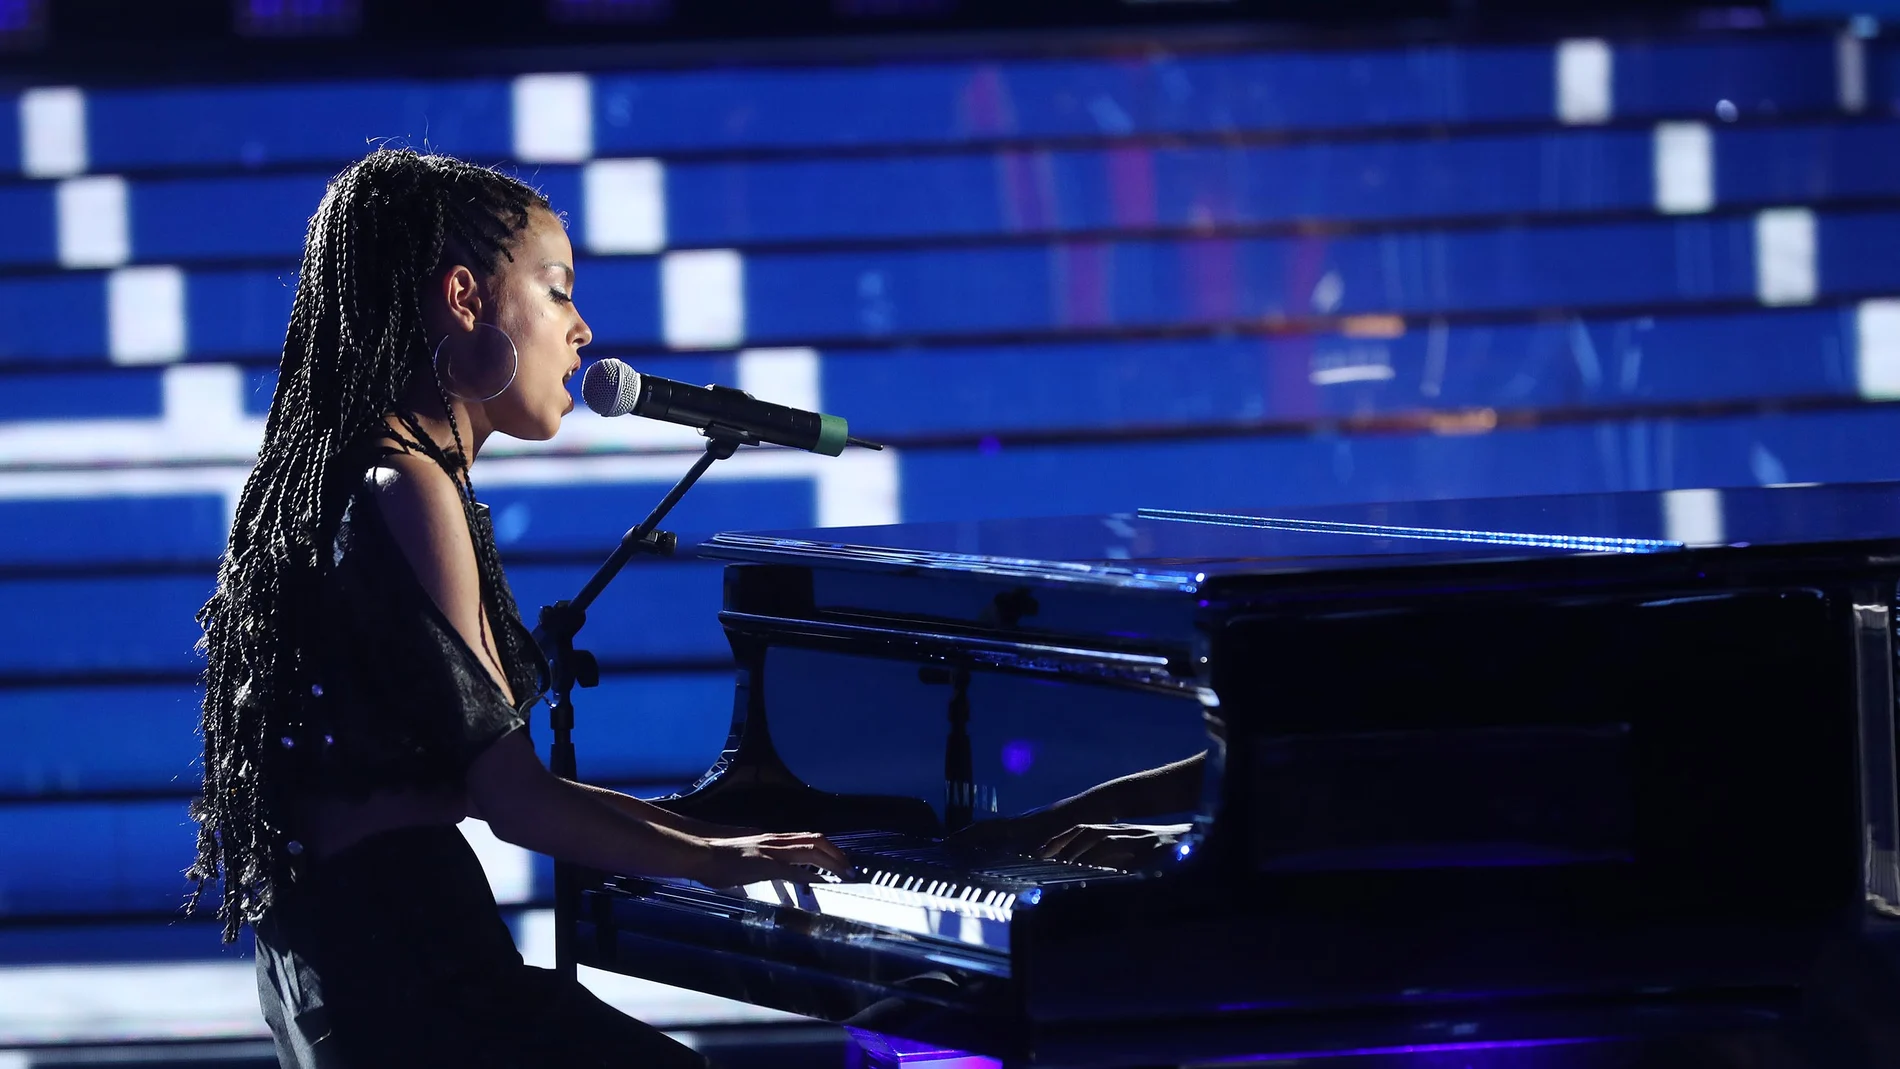 Nerea Rodríguez brilla al piano como Alicia Keys en ‘Fallin’